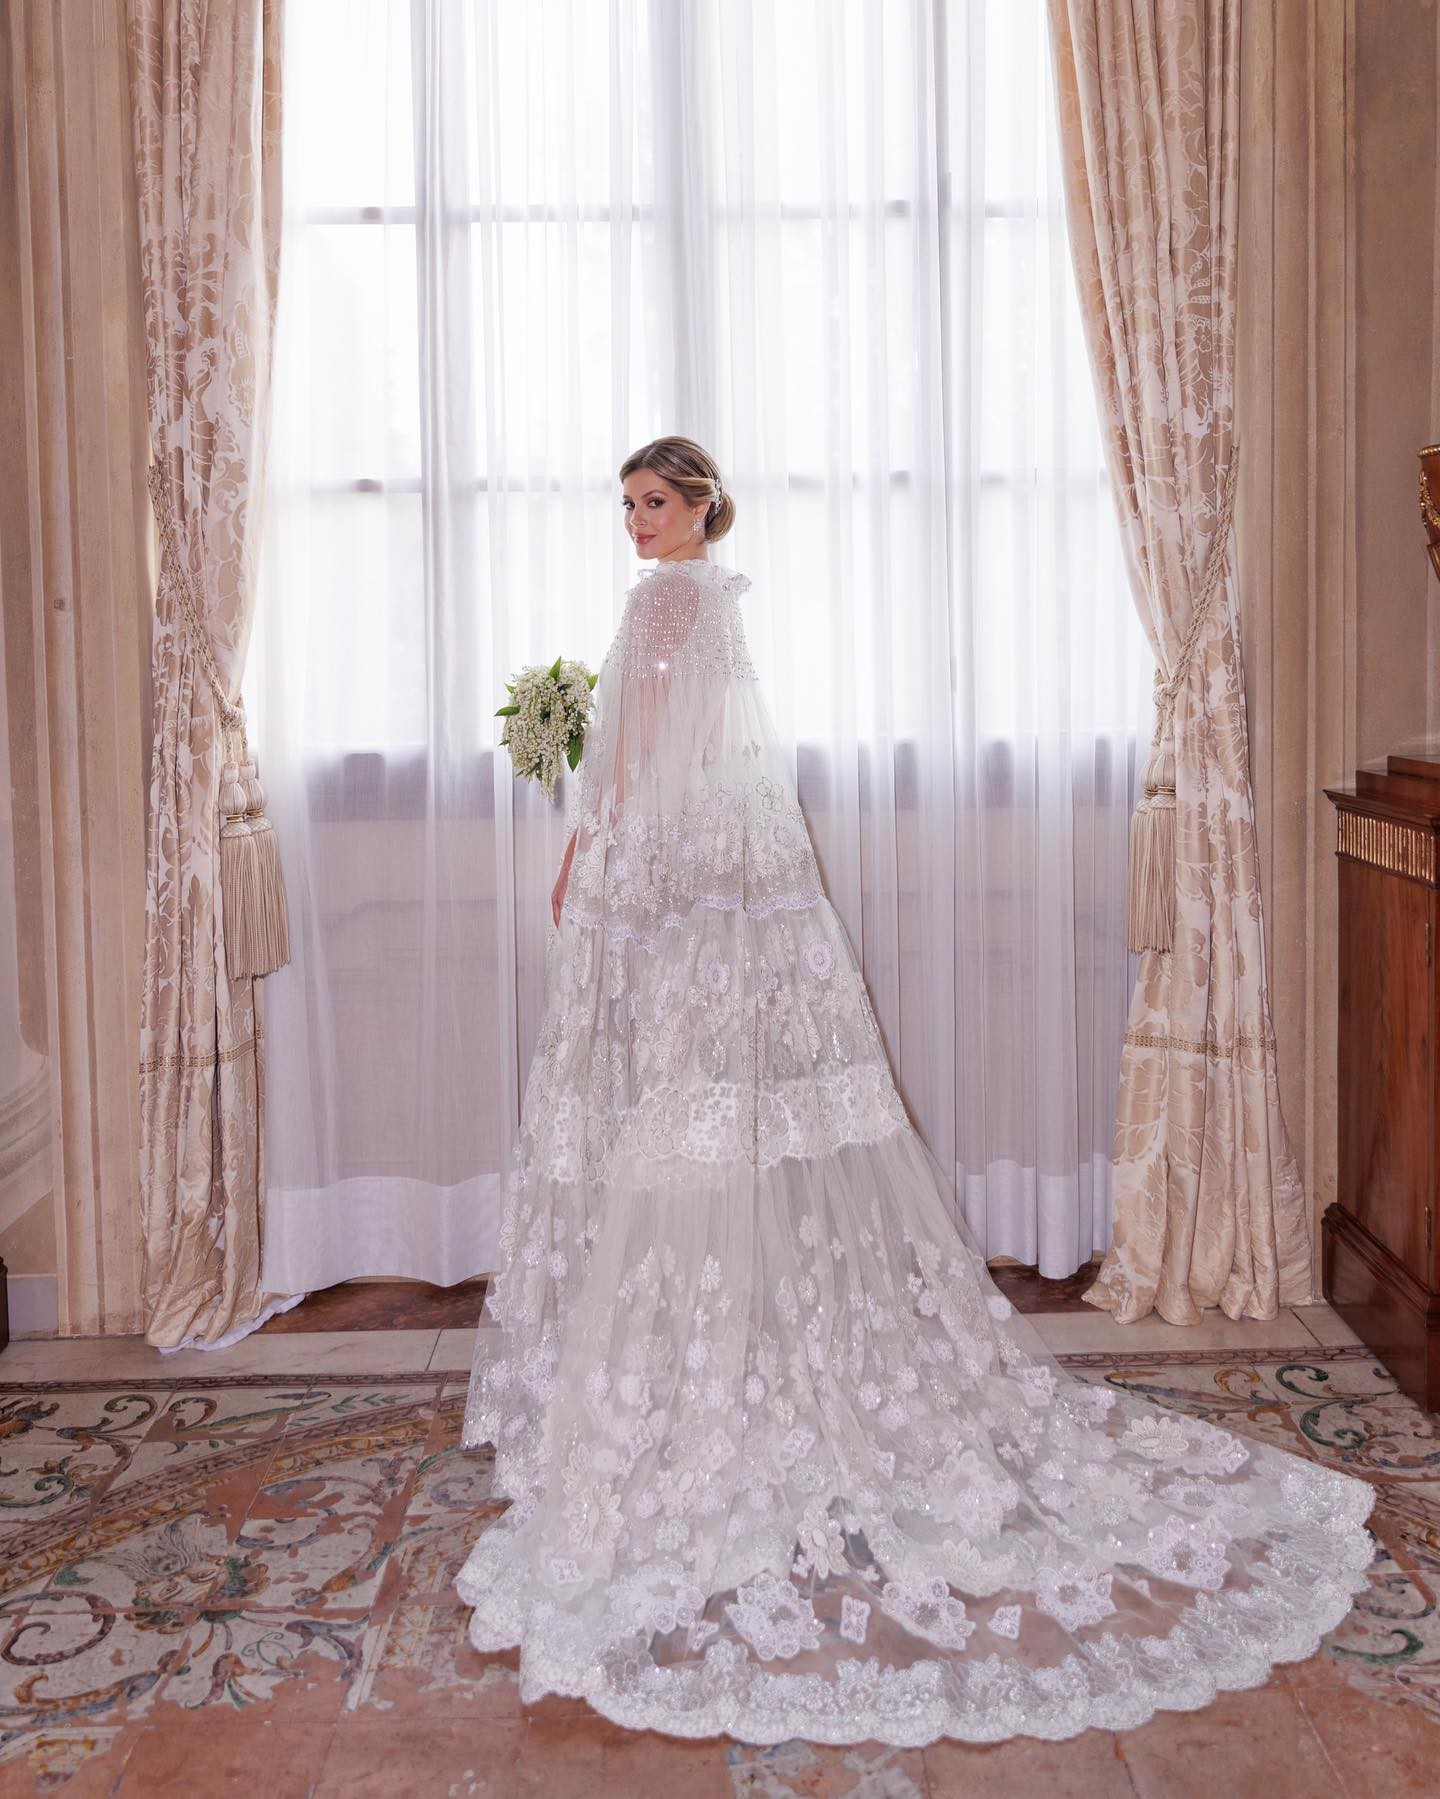 Lala Rudge se casa com vestido da marca de alta costuma Valentino (Foto: Reprodução / Instagram)